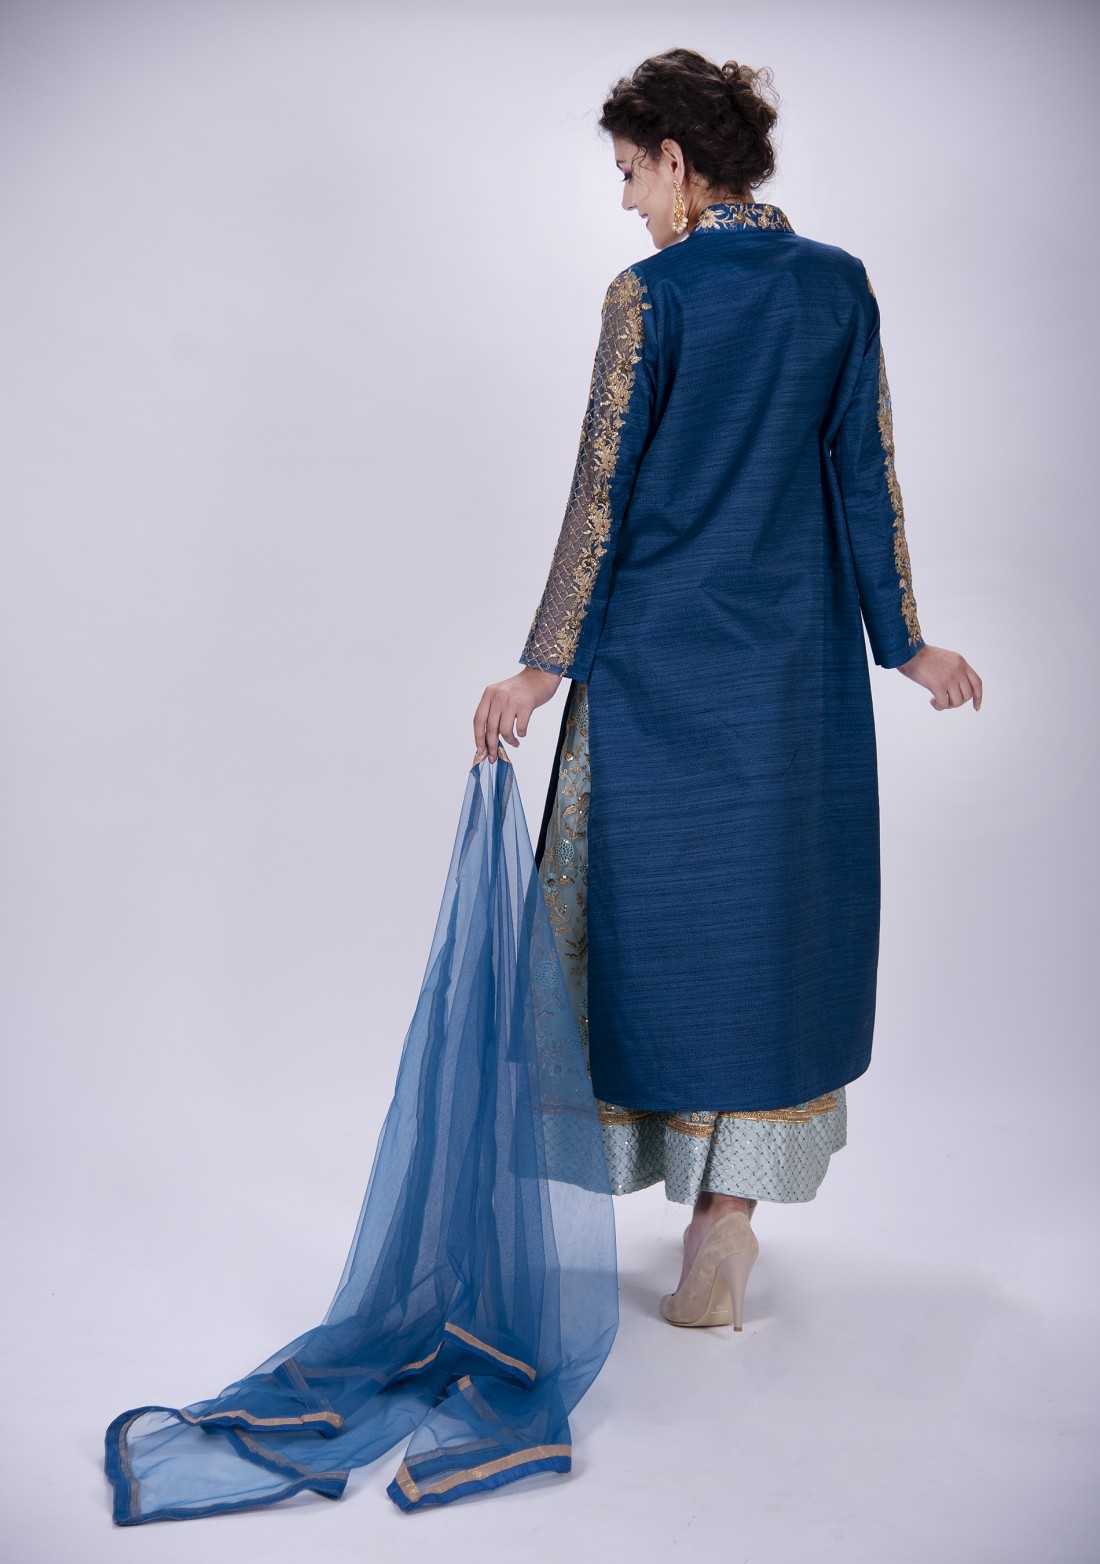 Monochromatic Anarkali Dress with Jacket